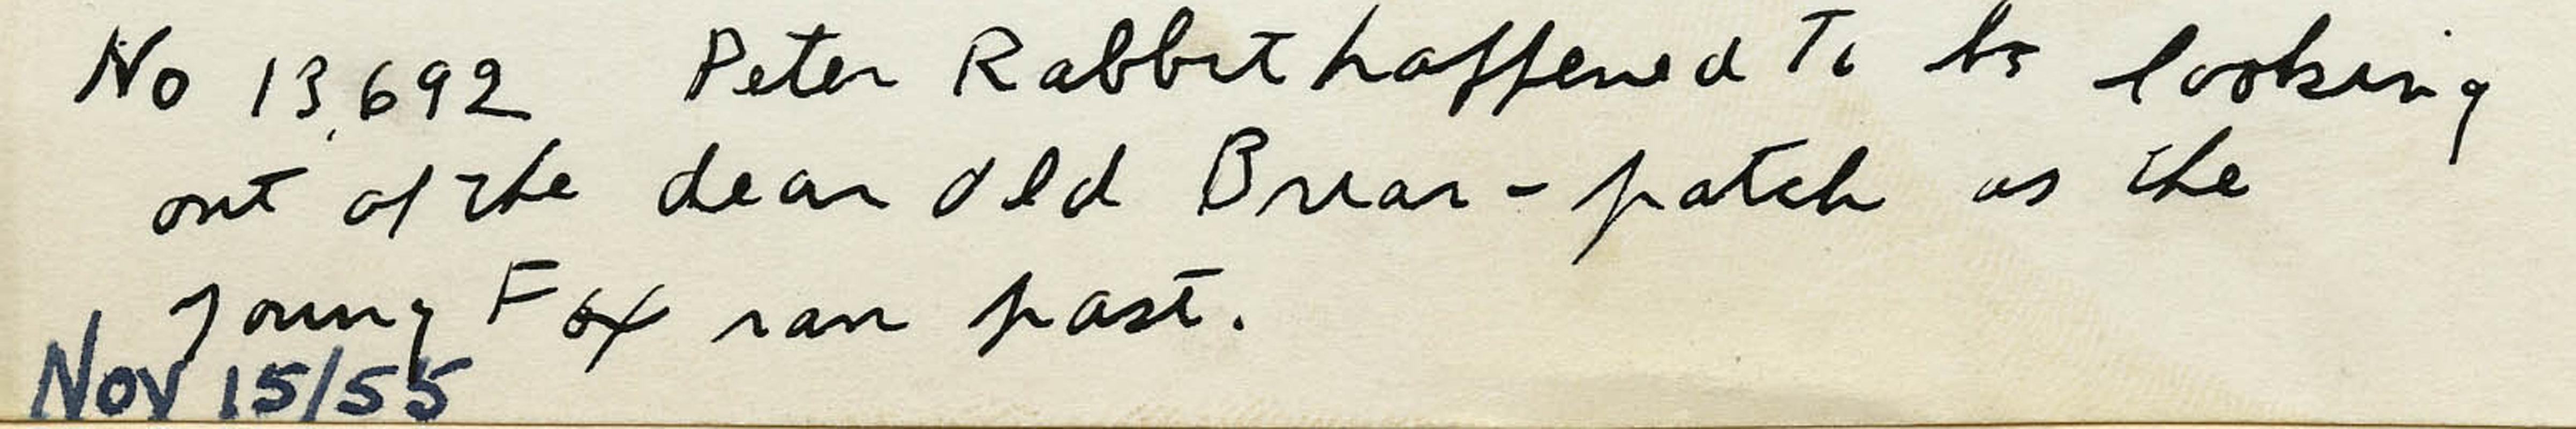 Peter Rabbit schaute zufällig aus dem guten alten Briar-Patch, als der junge Fuchs vorbeirannte.
Tinte auf Papier, 1955
Signiert 